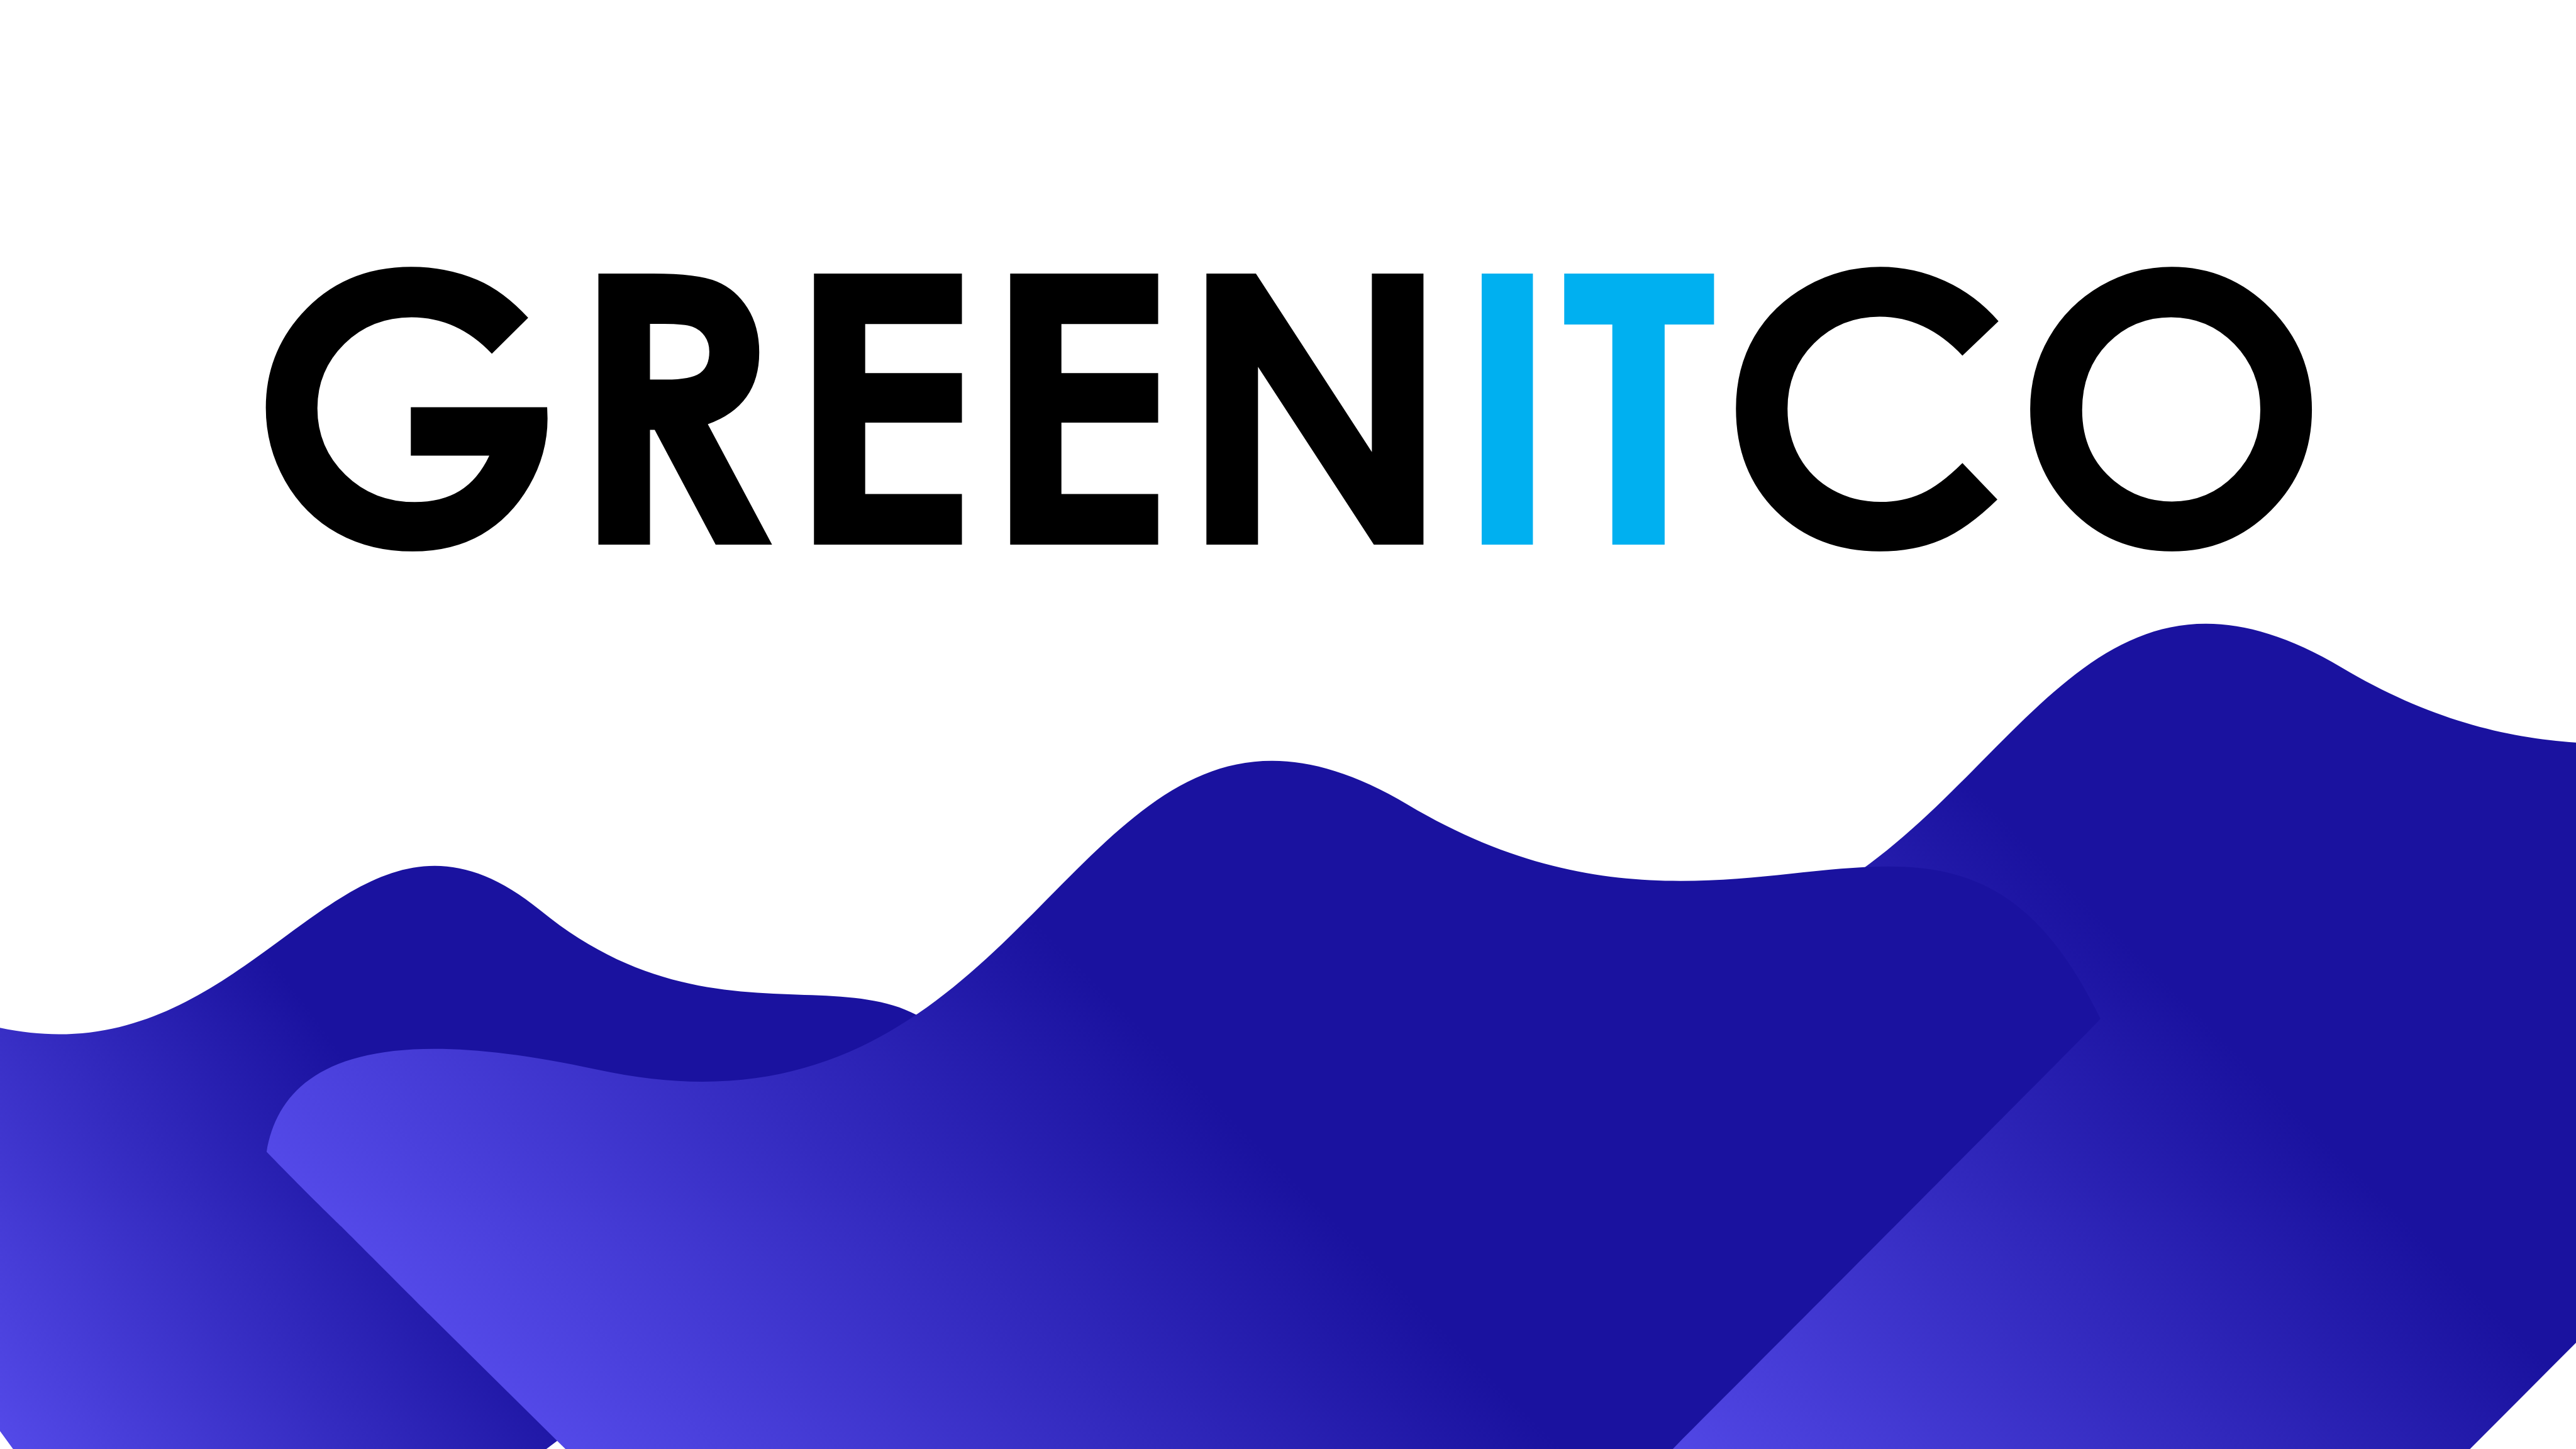 About Greenitco